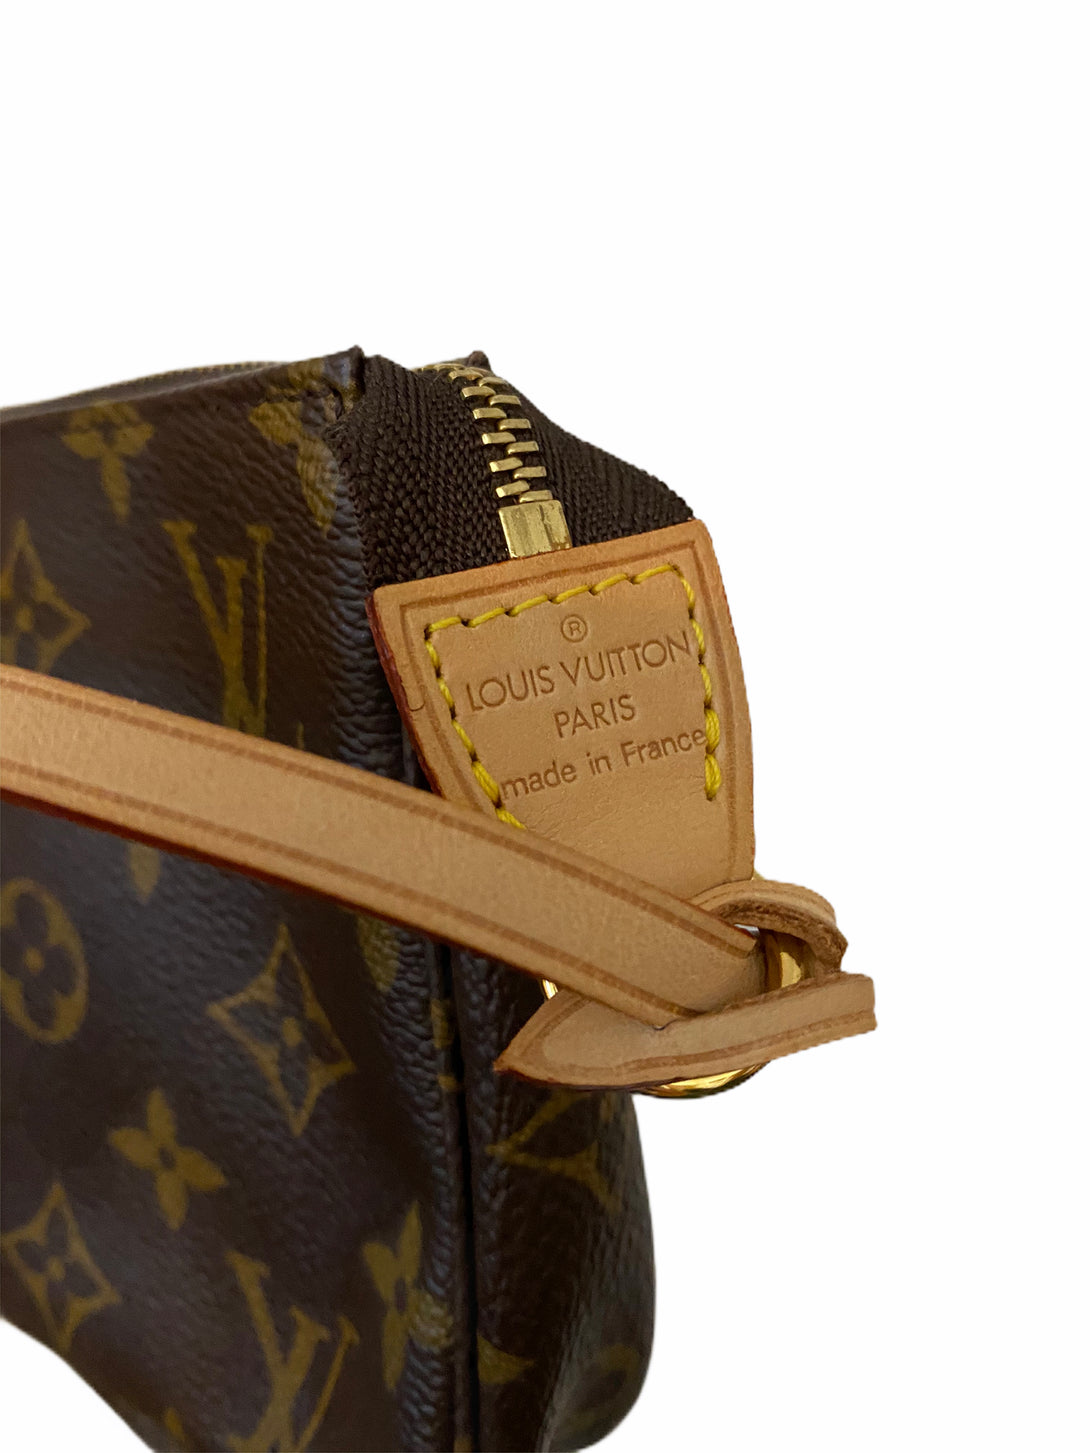 Louis Vuitton Monogram Pochette - As seen on Instagram 29/07/20 - Siopaella Designer Exchange